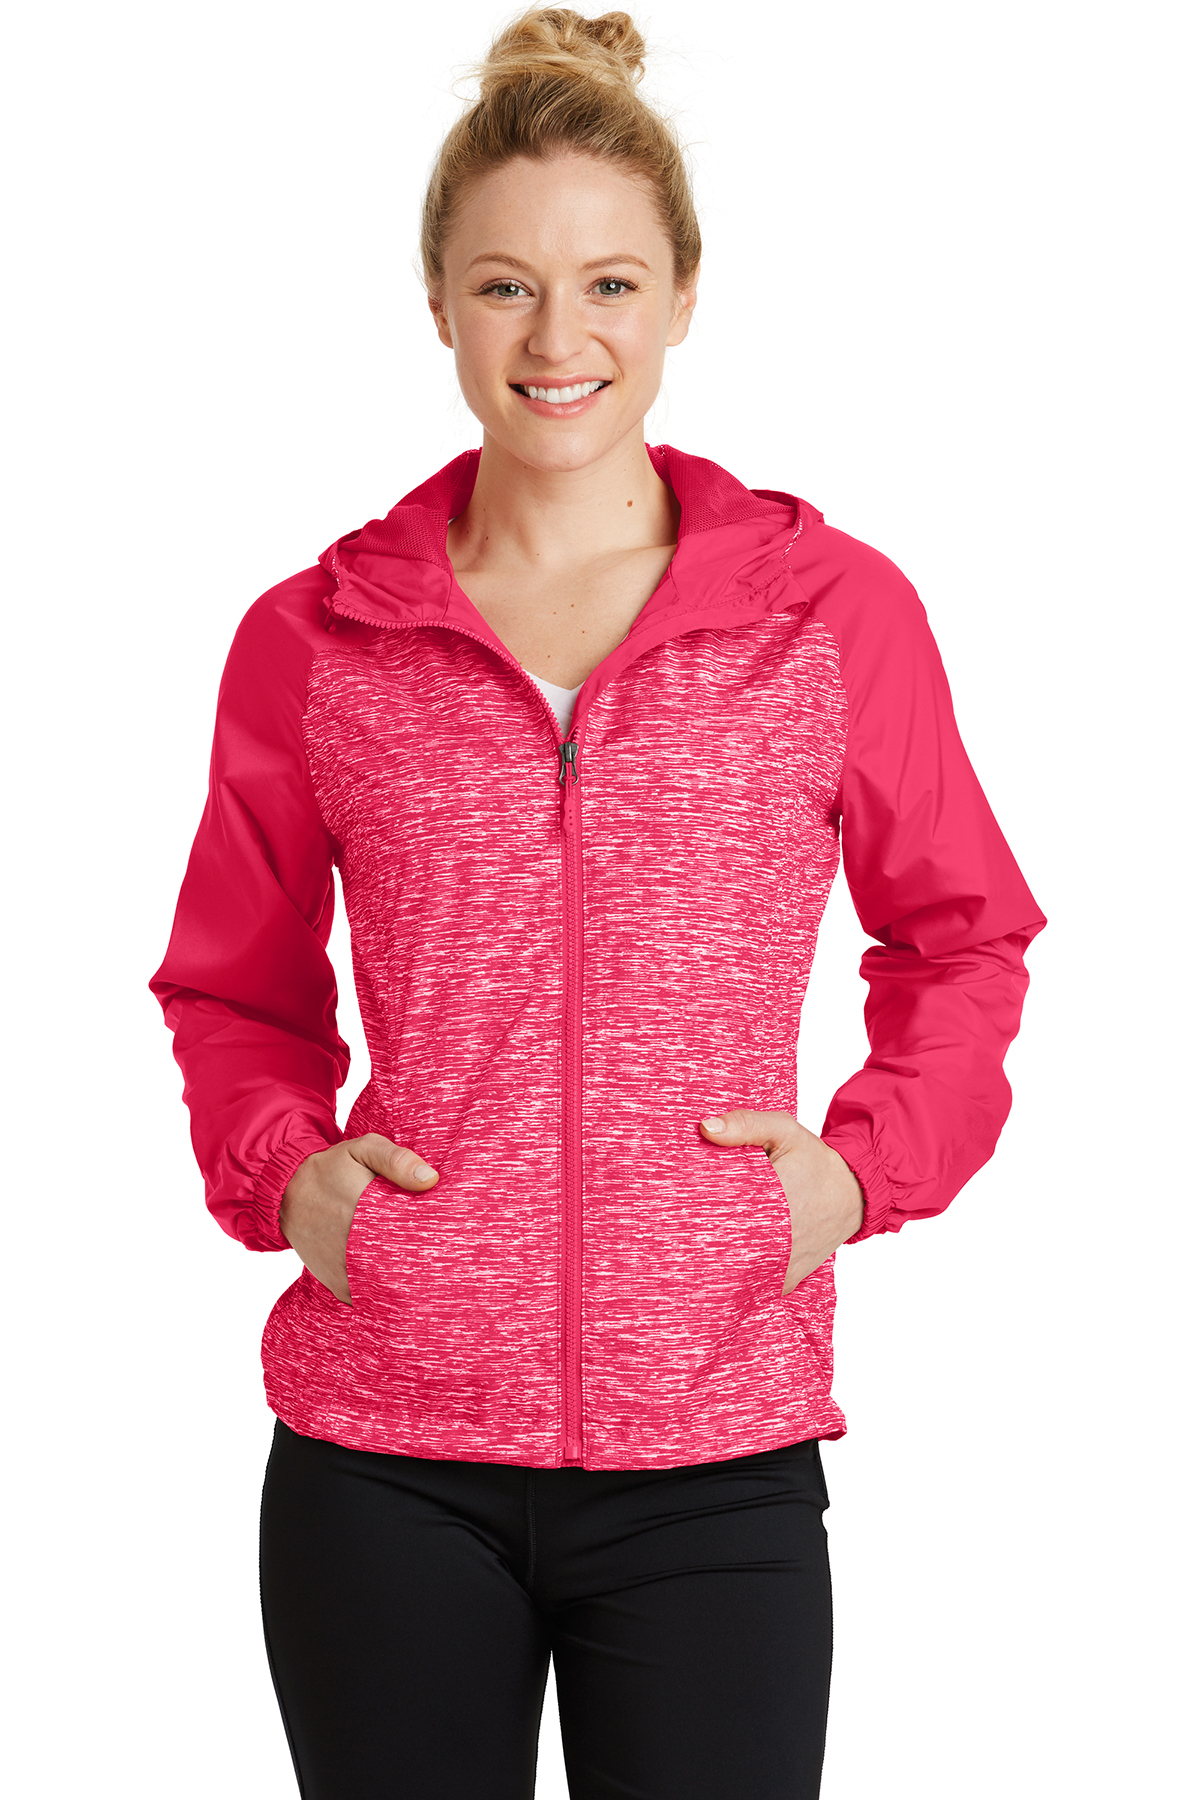 Sport-Tek Ladies Heather Colorblock Raglan Hooded Wind Jacket | Product |  Sport-Tek